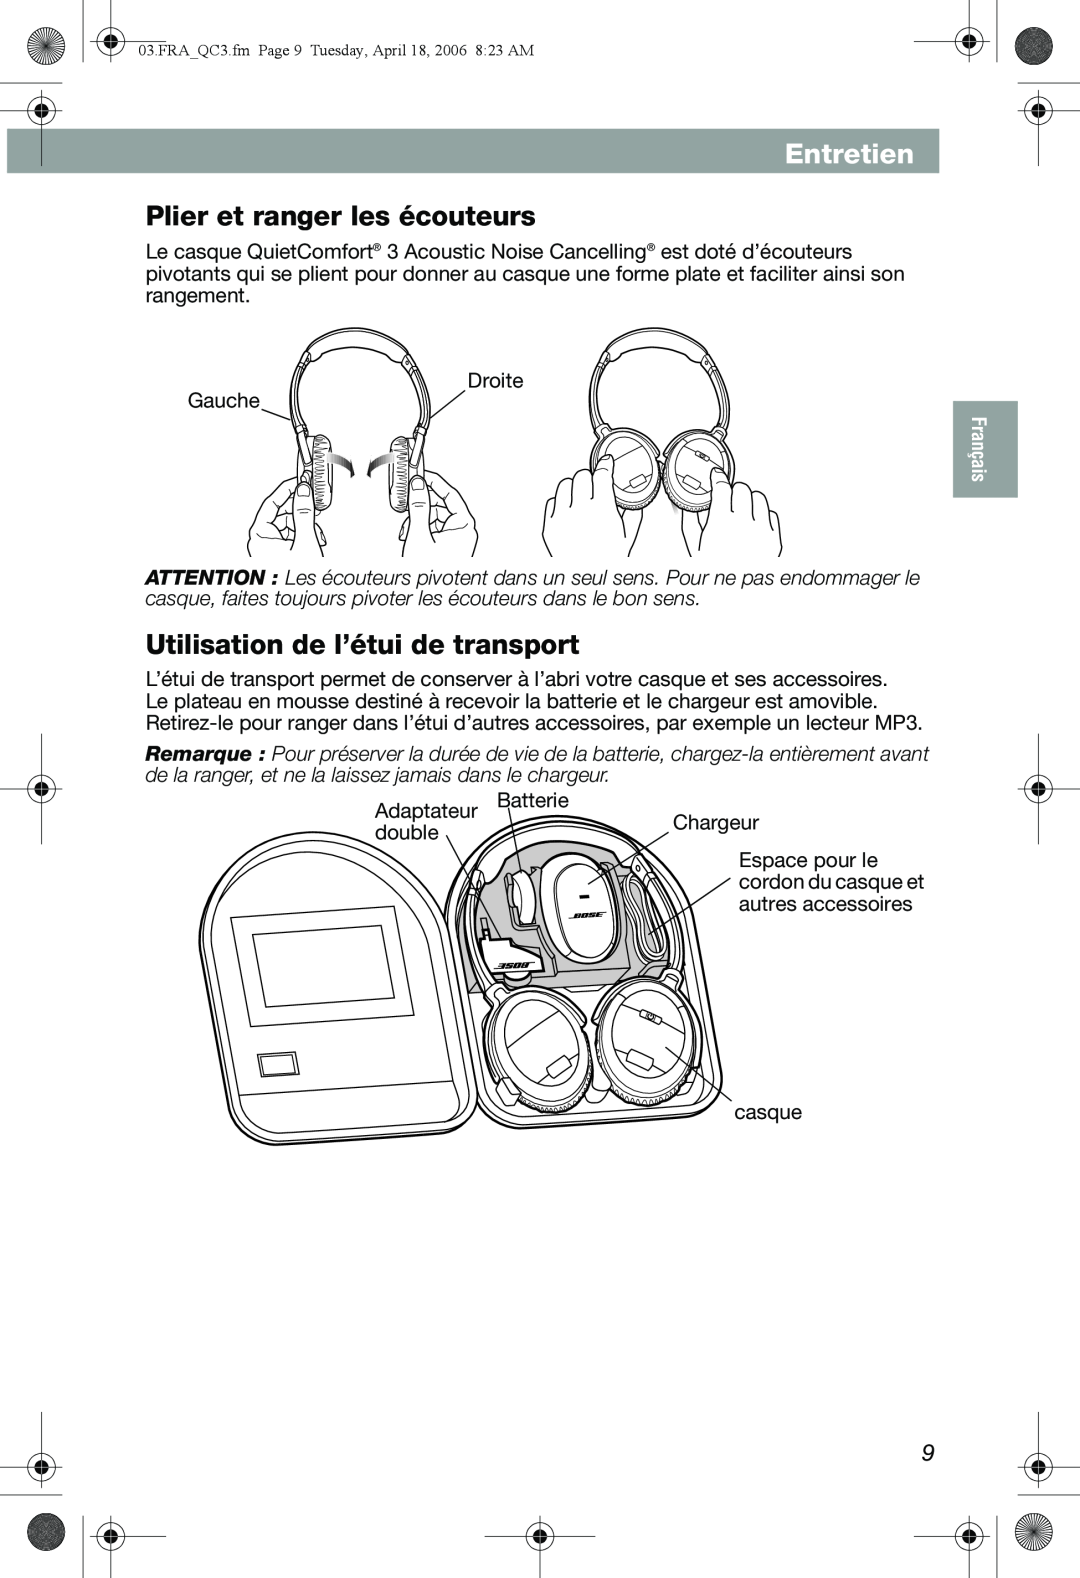 Bose QuietComfort 3 manual Entretien, Plier et ranger les écouteurs, Utilisation de l’étui de transport 